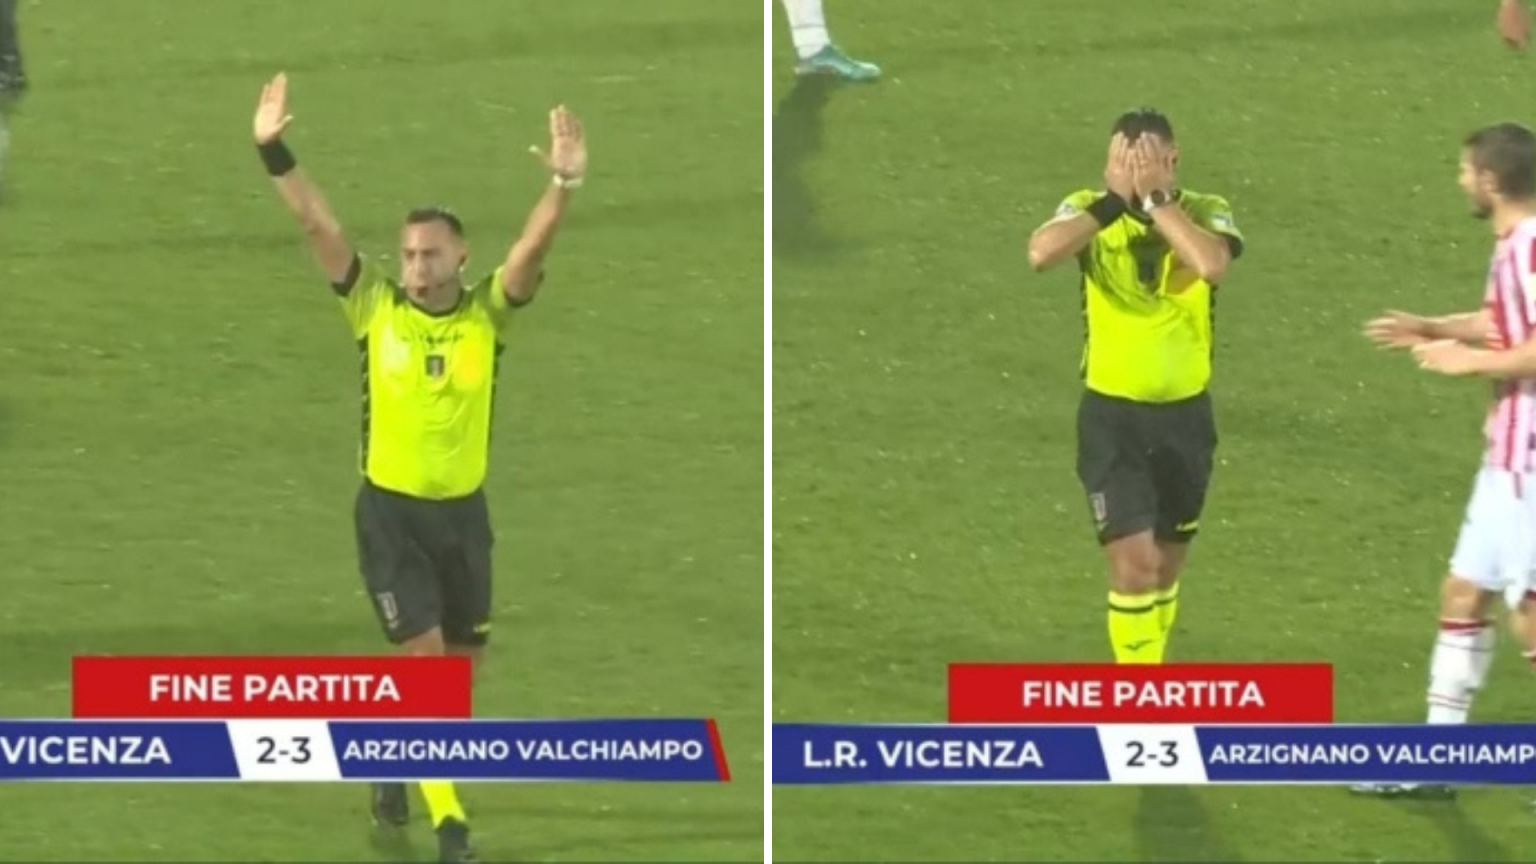 Reagimi ekip i gjyqtarit Italian kur e kupton se e përfundoi ndeshjen një minutë më herët